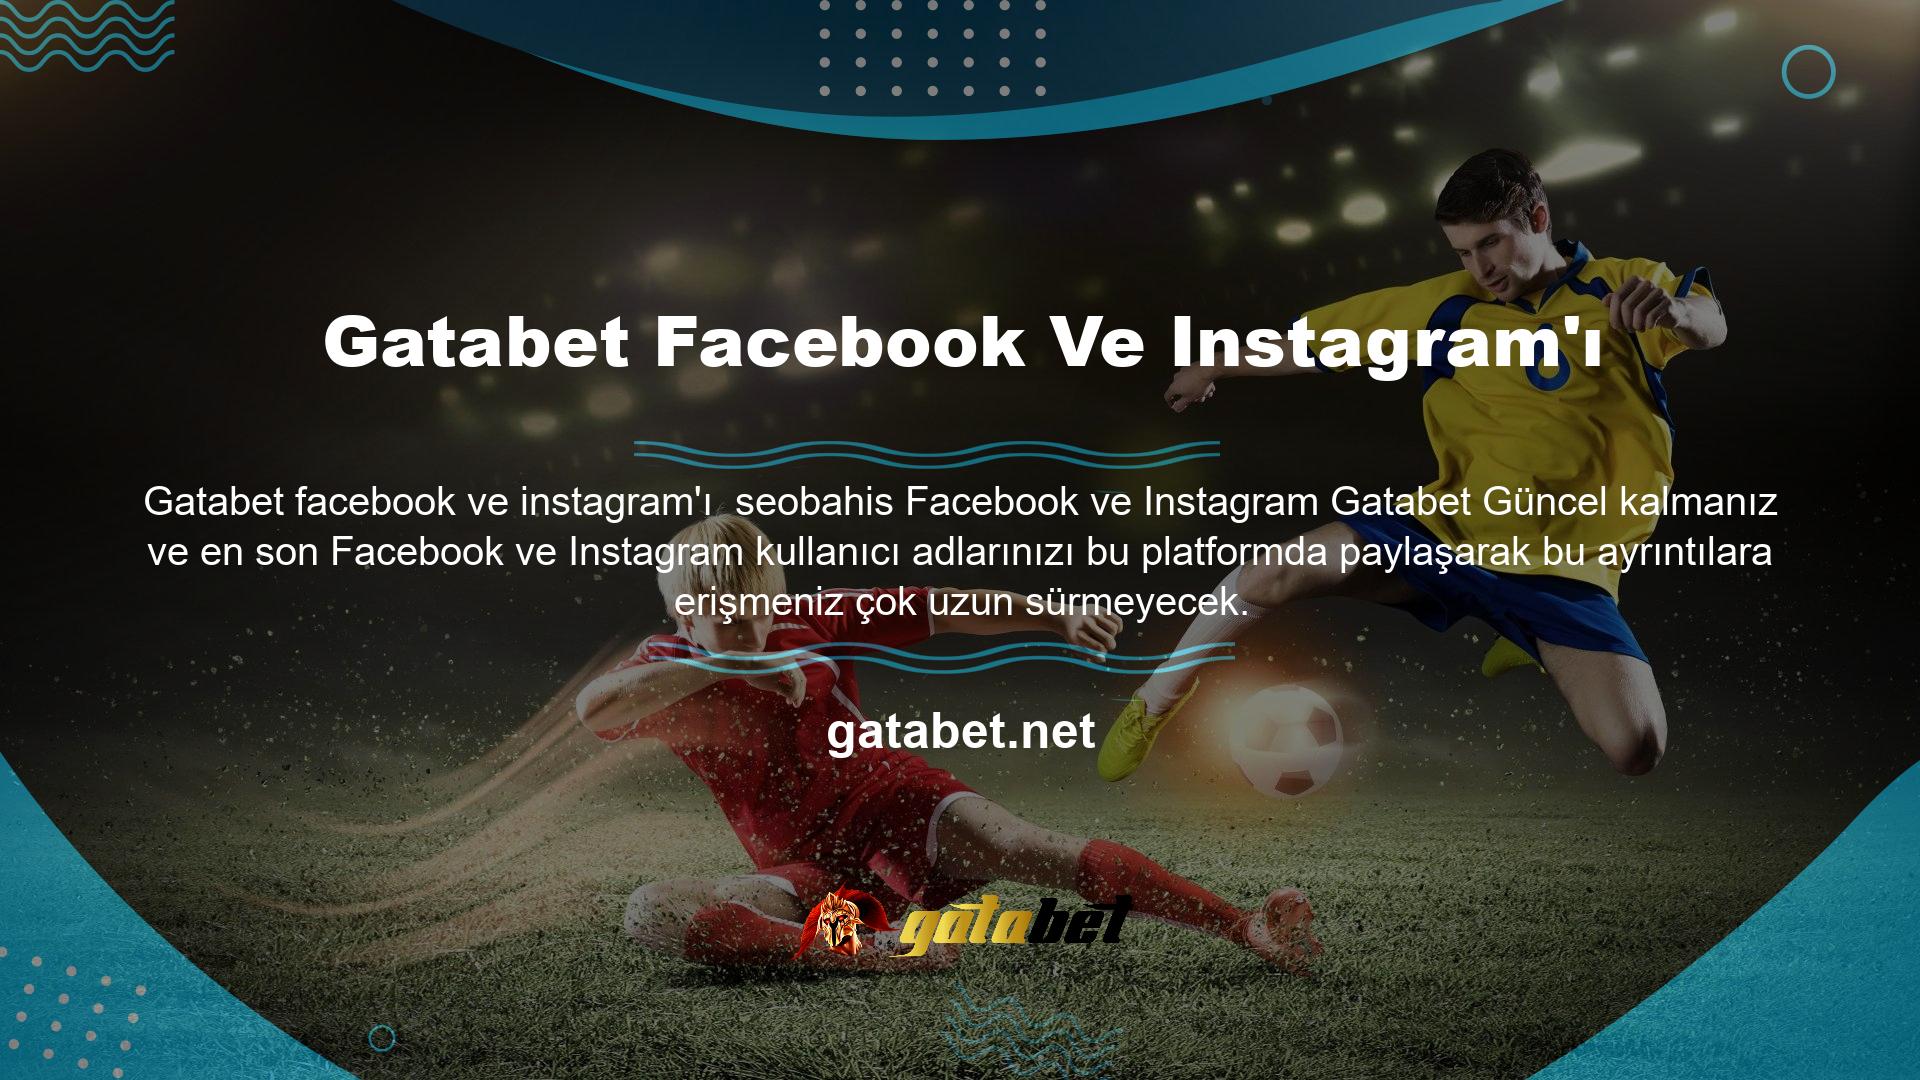 Gatabet yeni web sitesi giriş adresini Twitter, Facebook ve Instagram'da takip edin ve tek tıkla giriş yapın